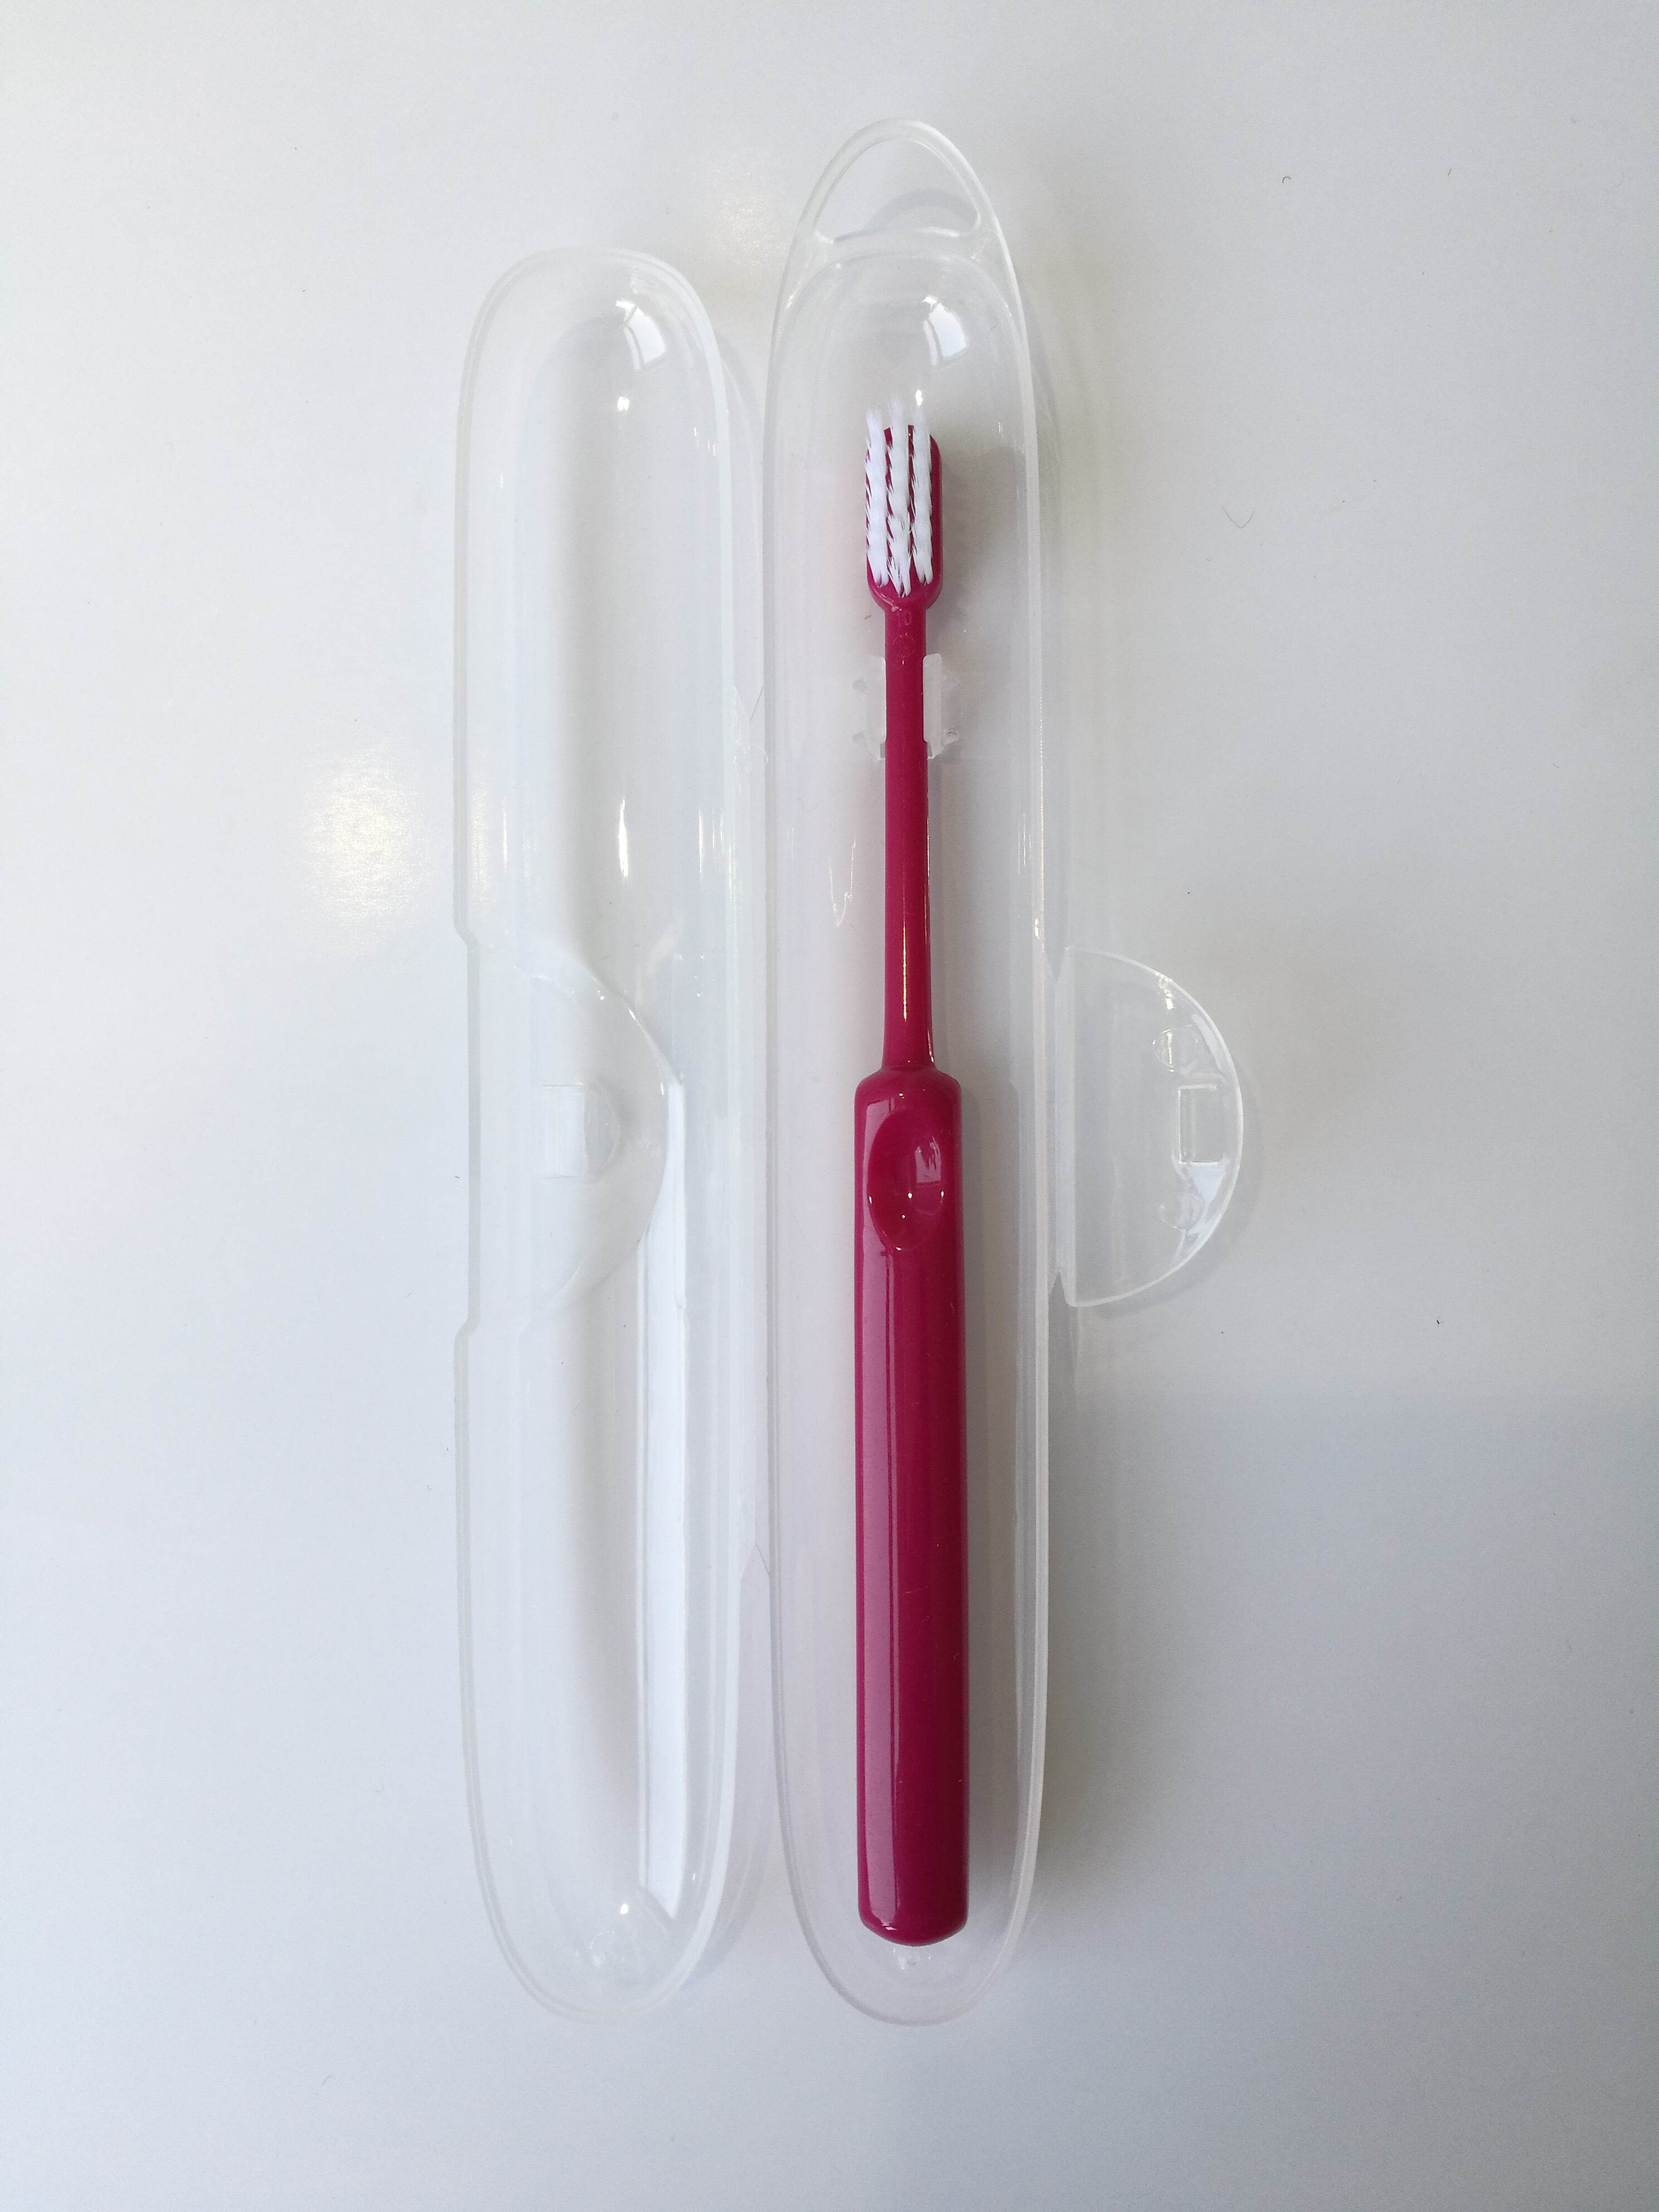 יאנגזו הגעה חדשה מתקן משחת שיניים פלסטיק 2 כוס מחזיק מחזיק מברשת שיניים קיר מגנטי